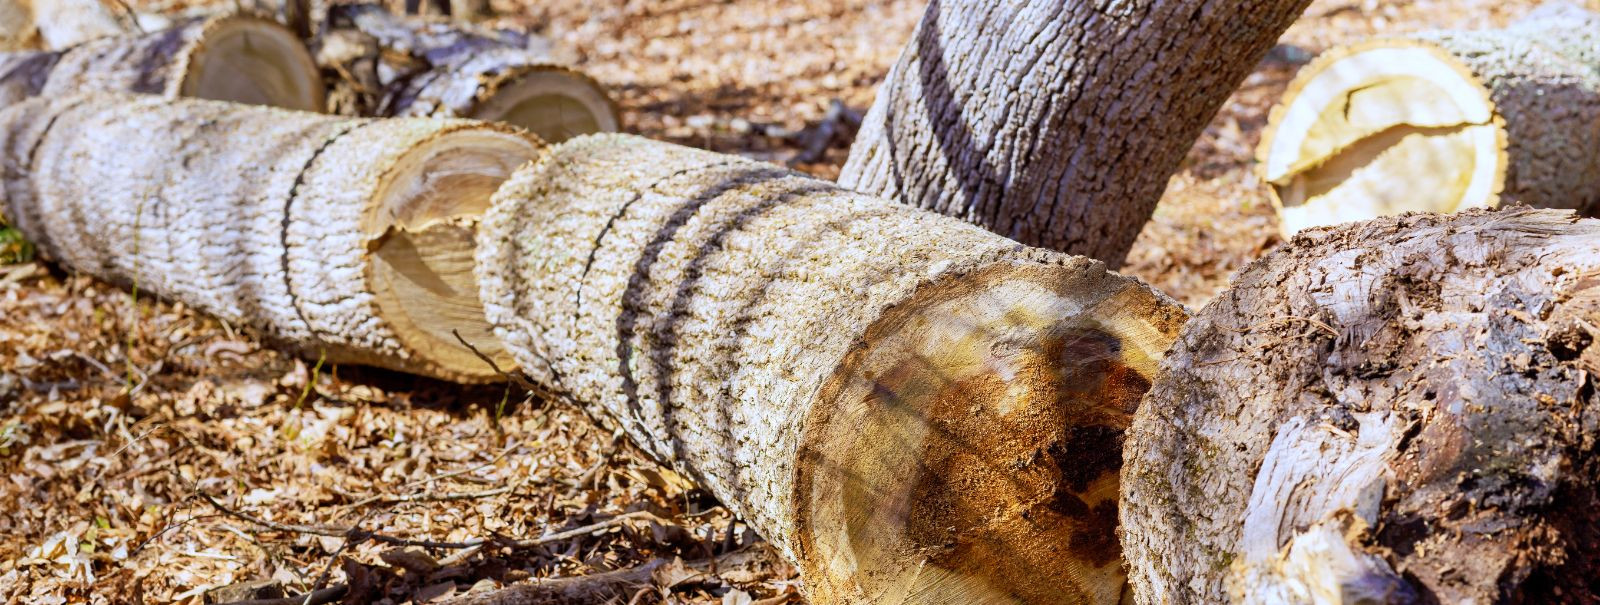 Puuvõrade kujundamine on arboristika oluline aspekt, mis hõlmab puu ülemiste okste ja lehestiku hoolikat kujundamist ja haldamist. See praktika aitab kaasa mitt